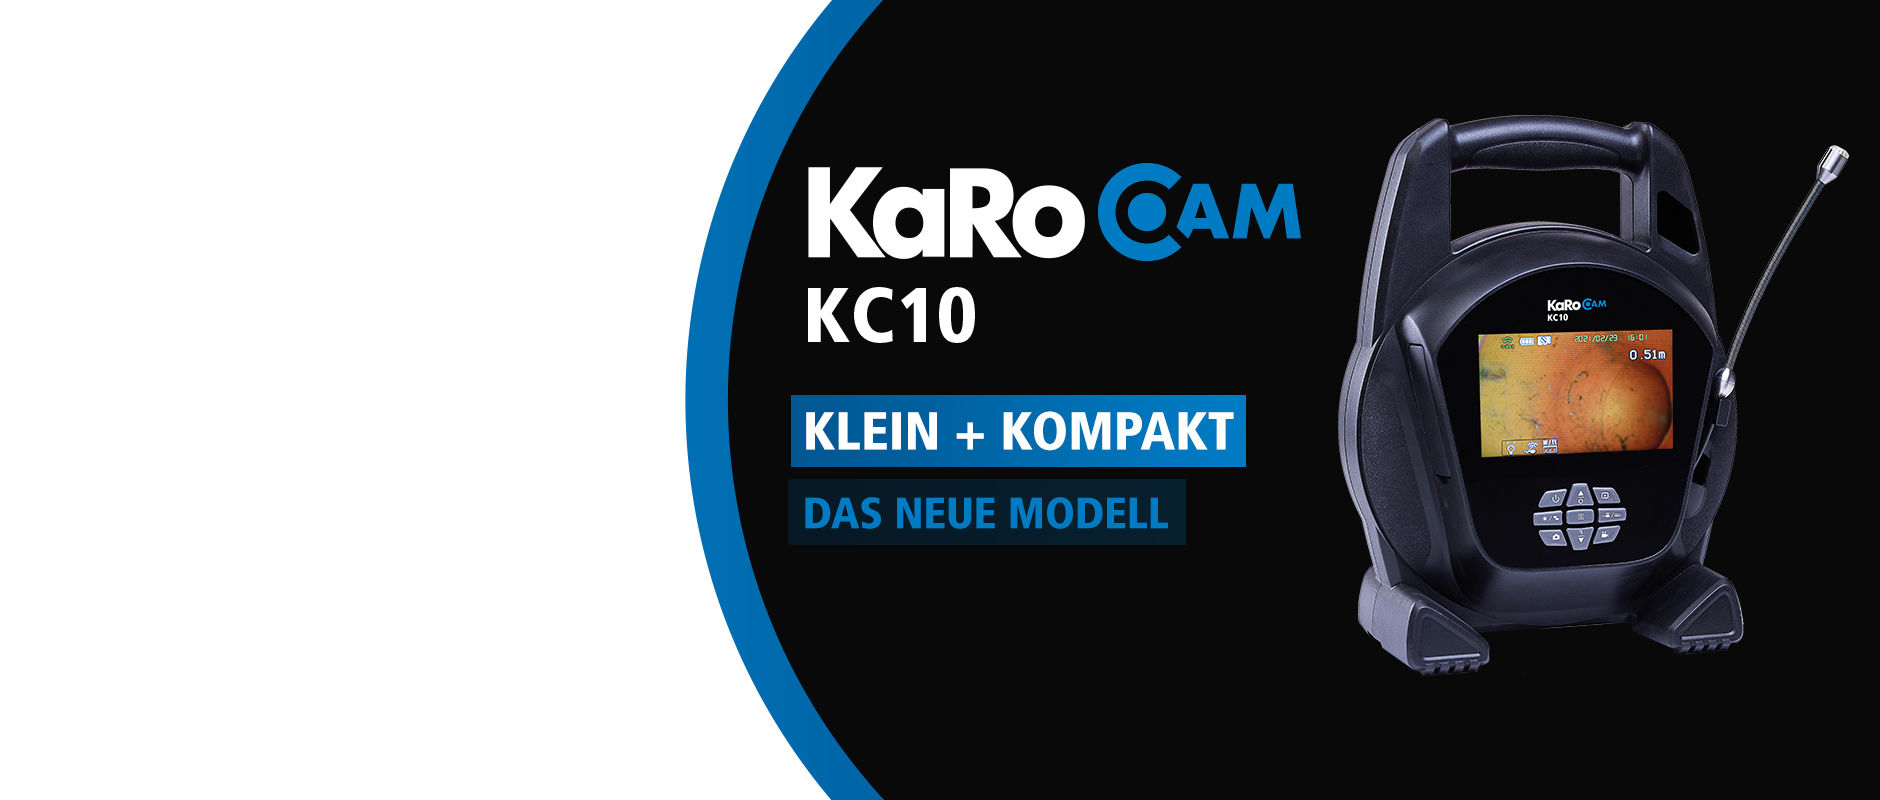 KaRoCam KC10